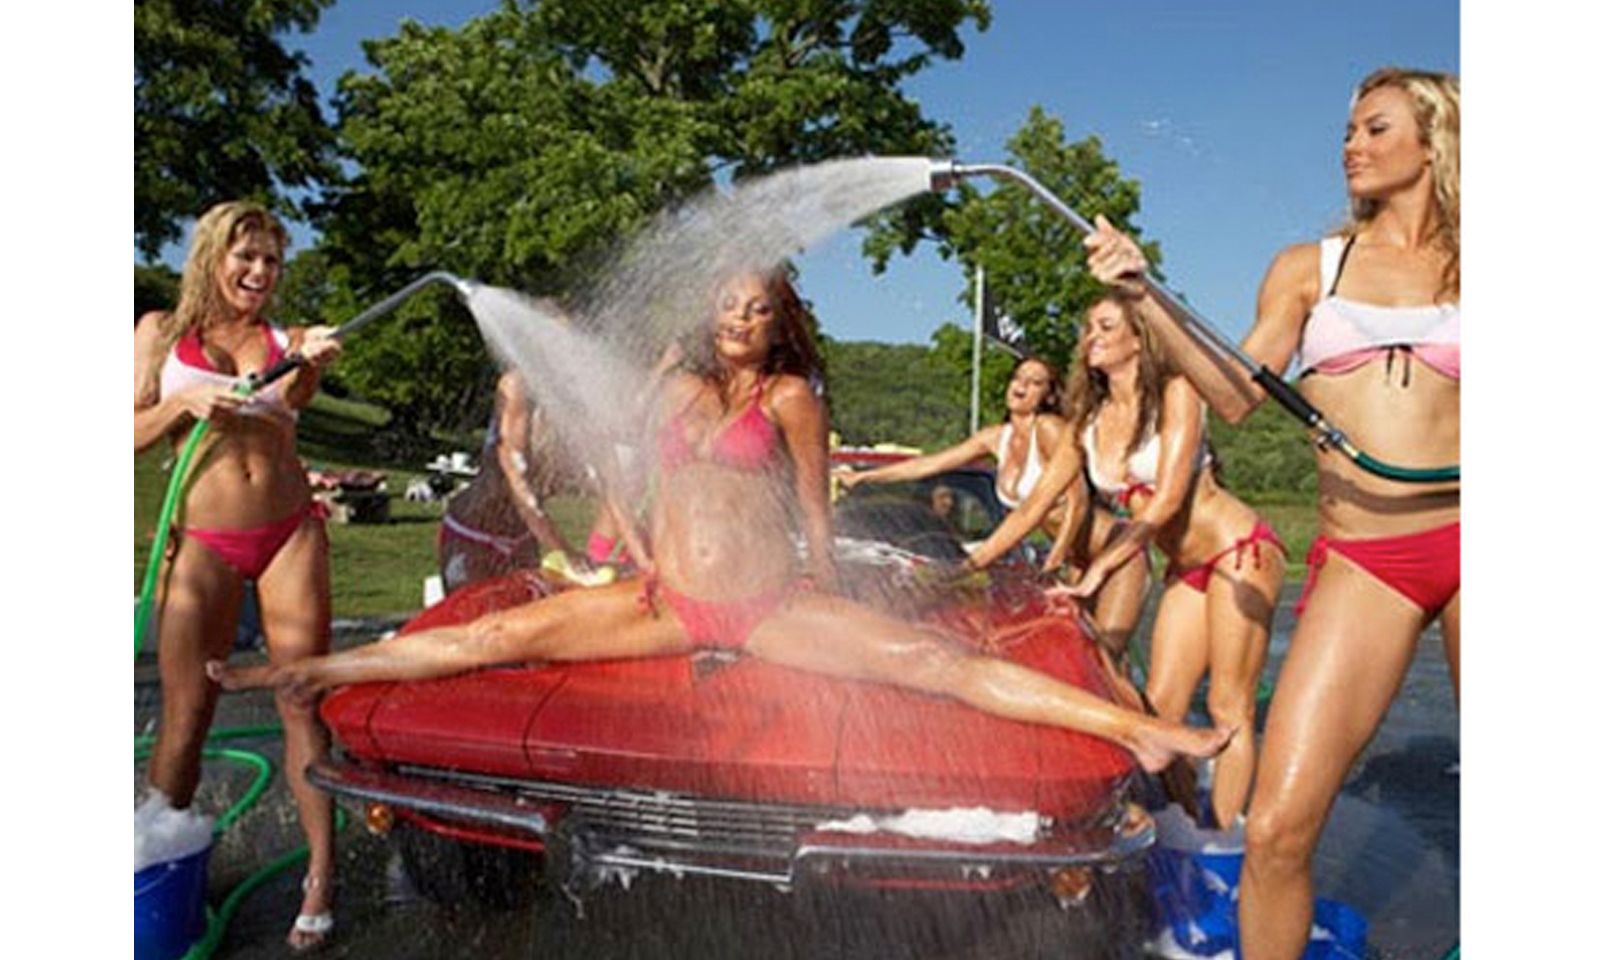 Naked bikini car wash